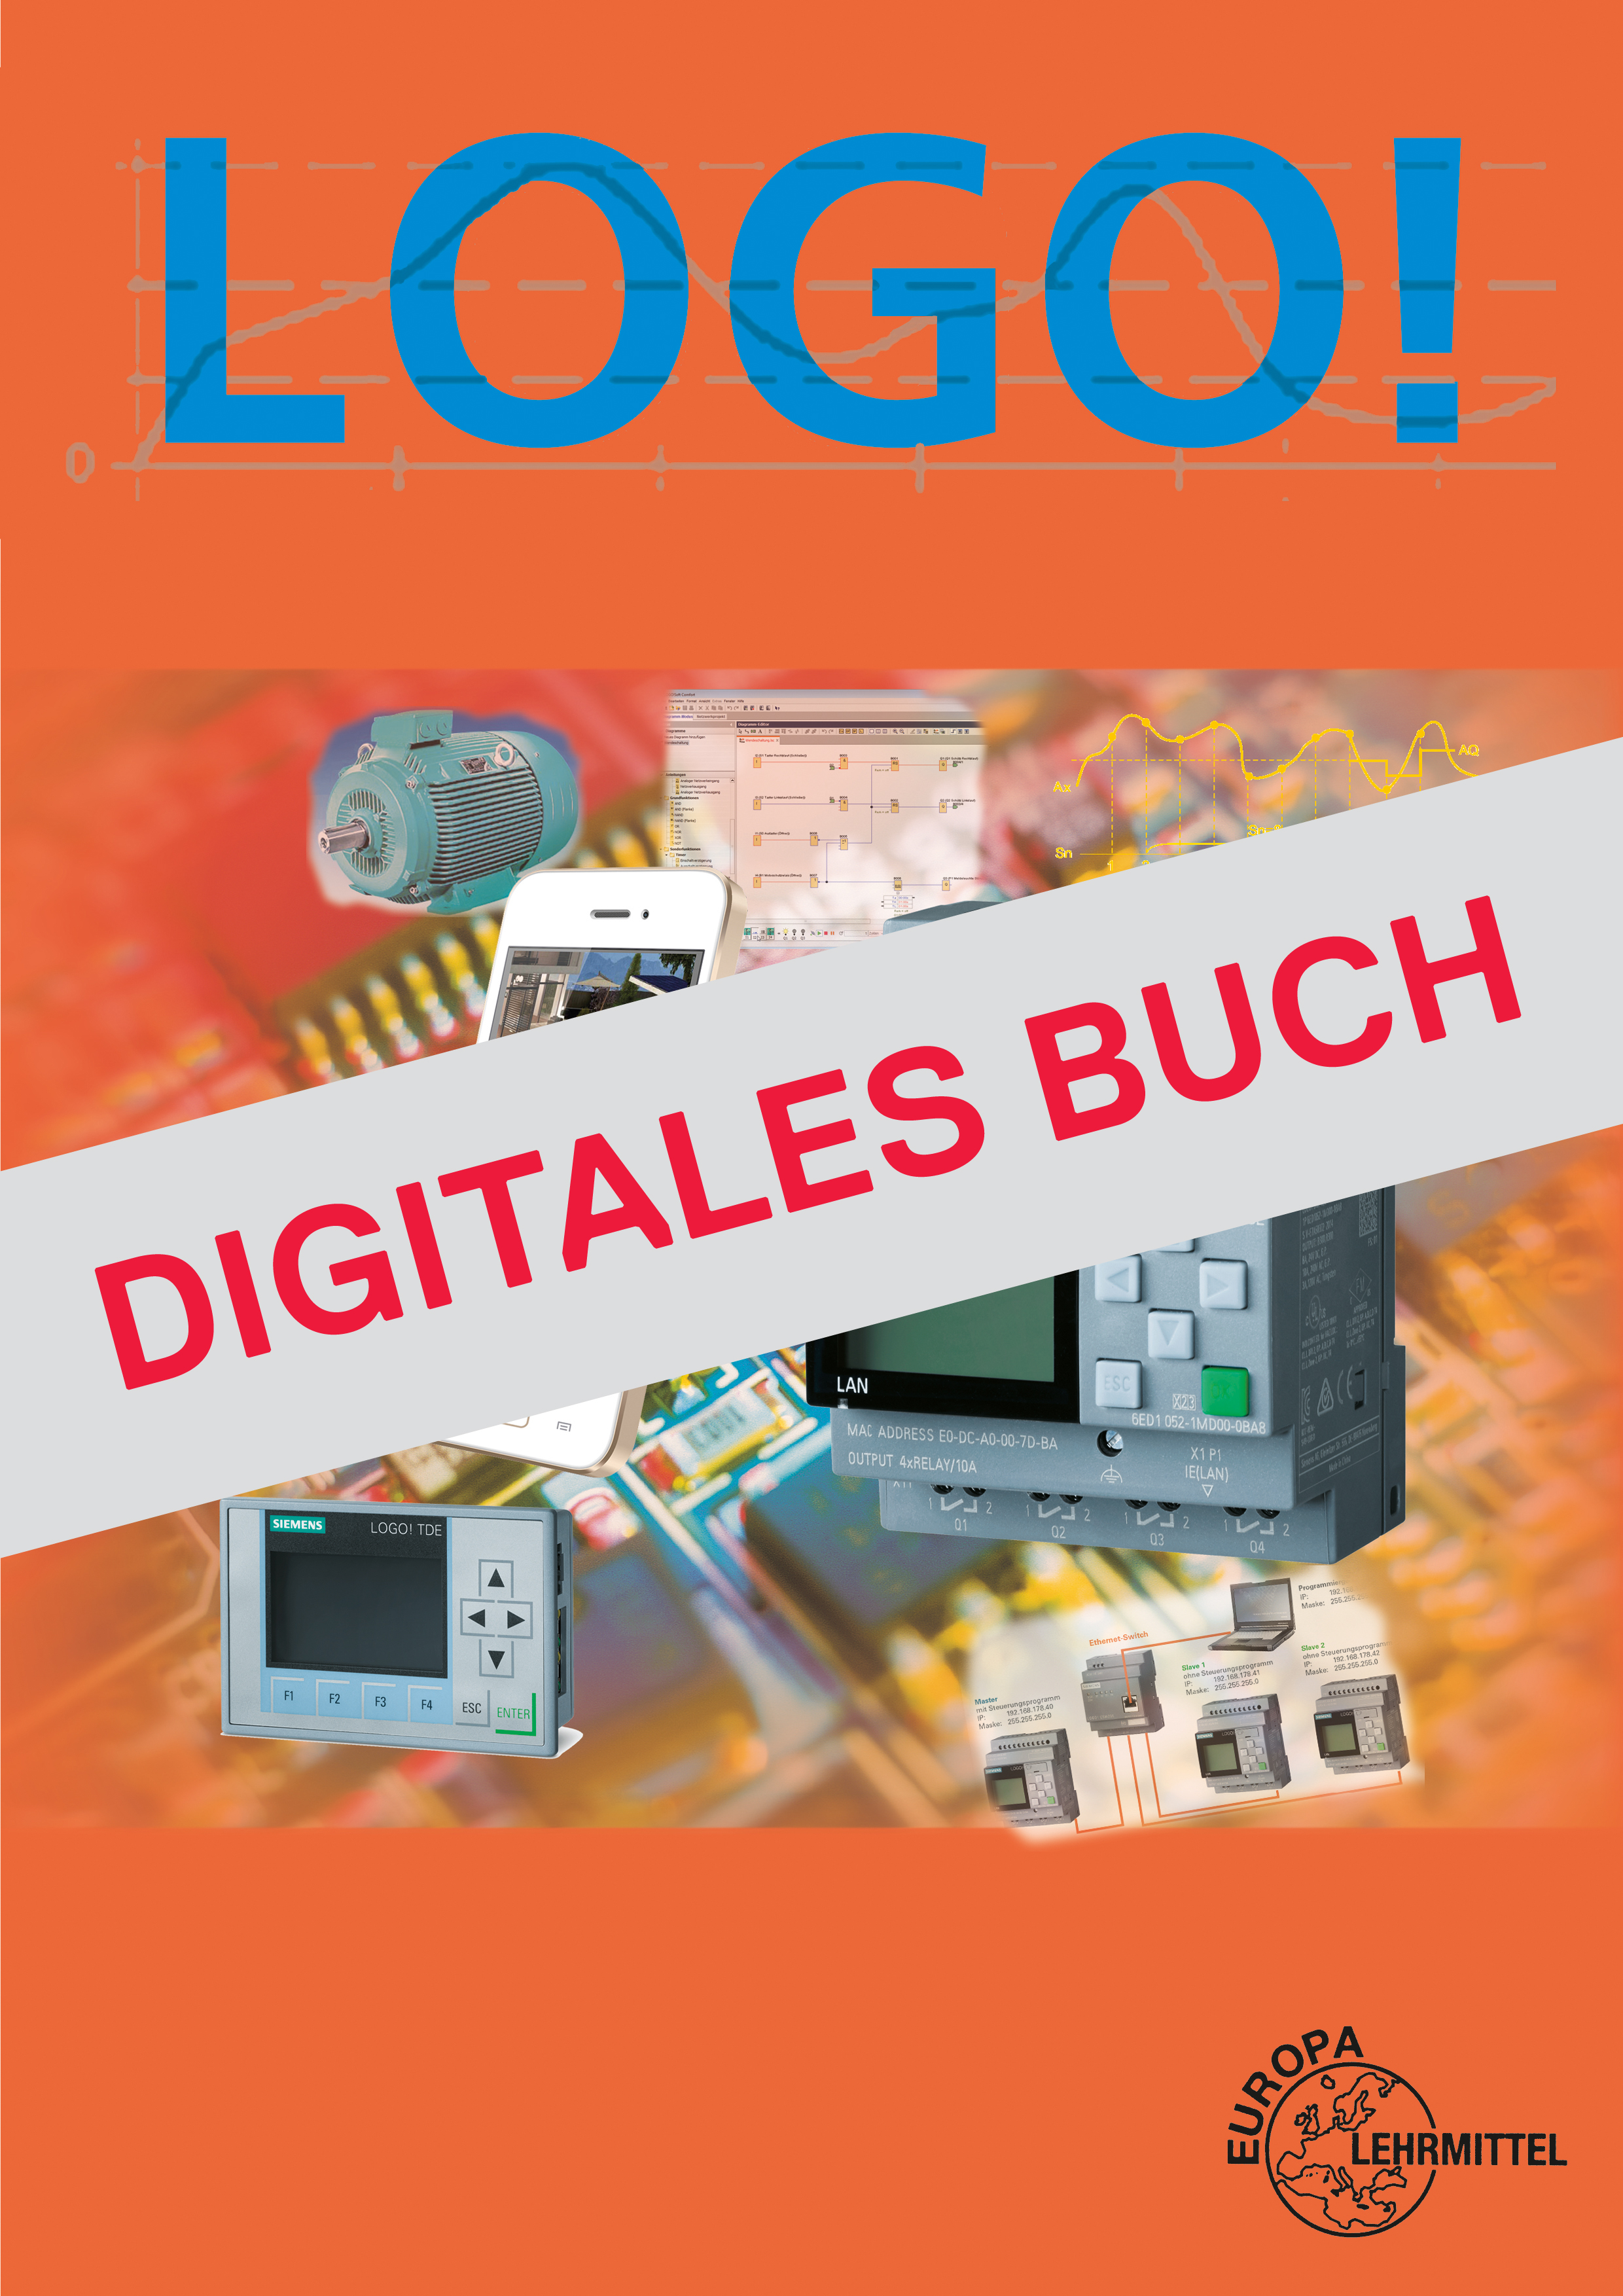 LOGO! - Digitales Buch